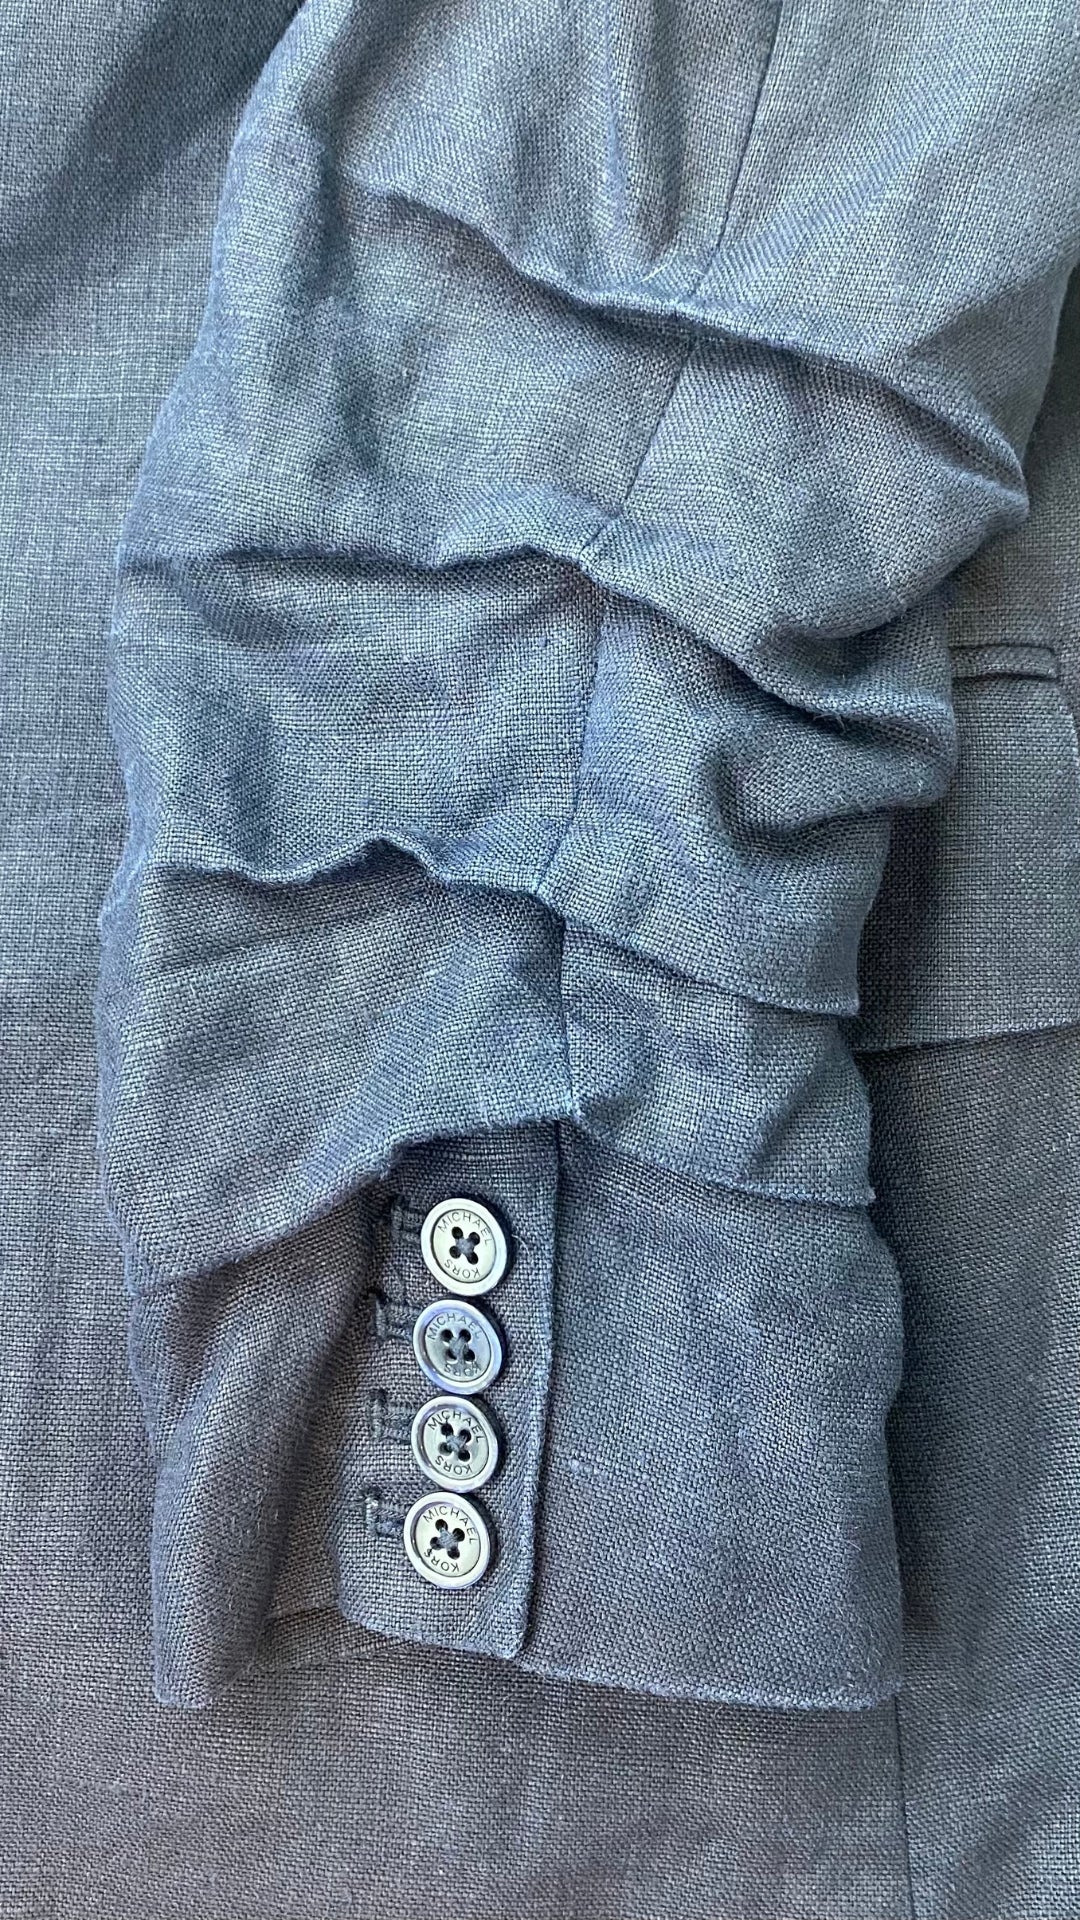 Veston estival parfait, ce blazer marine en lin Michael Kors est une base pour les températures chaudes. Vue du détail de la manche froncée.